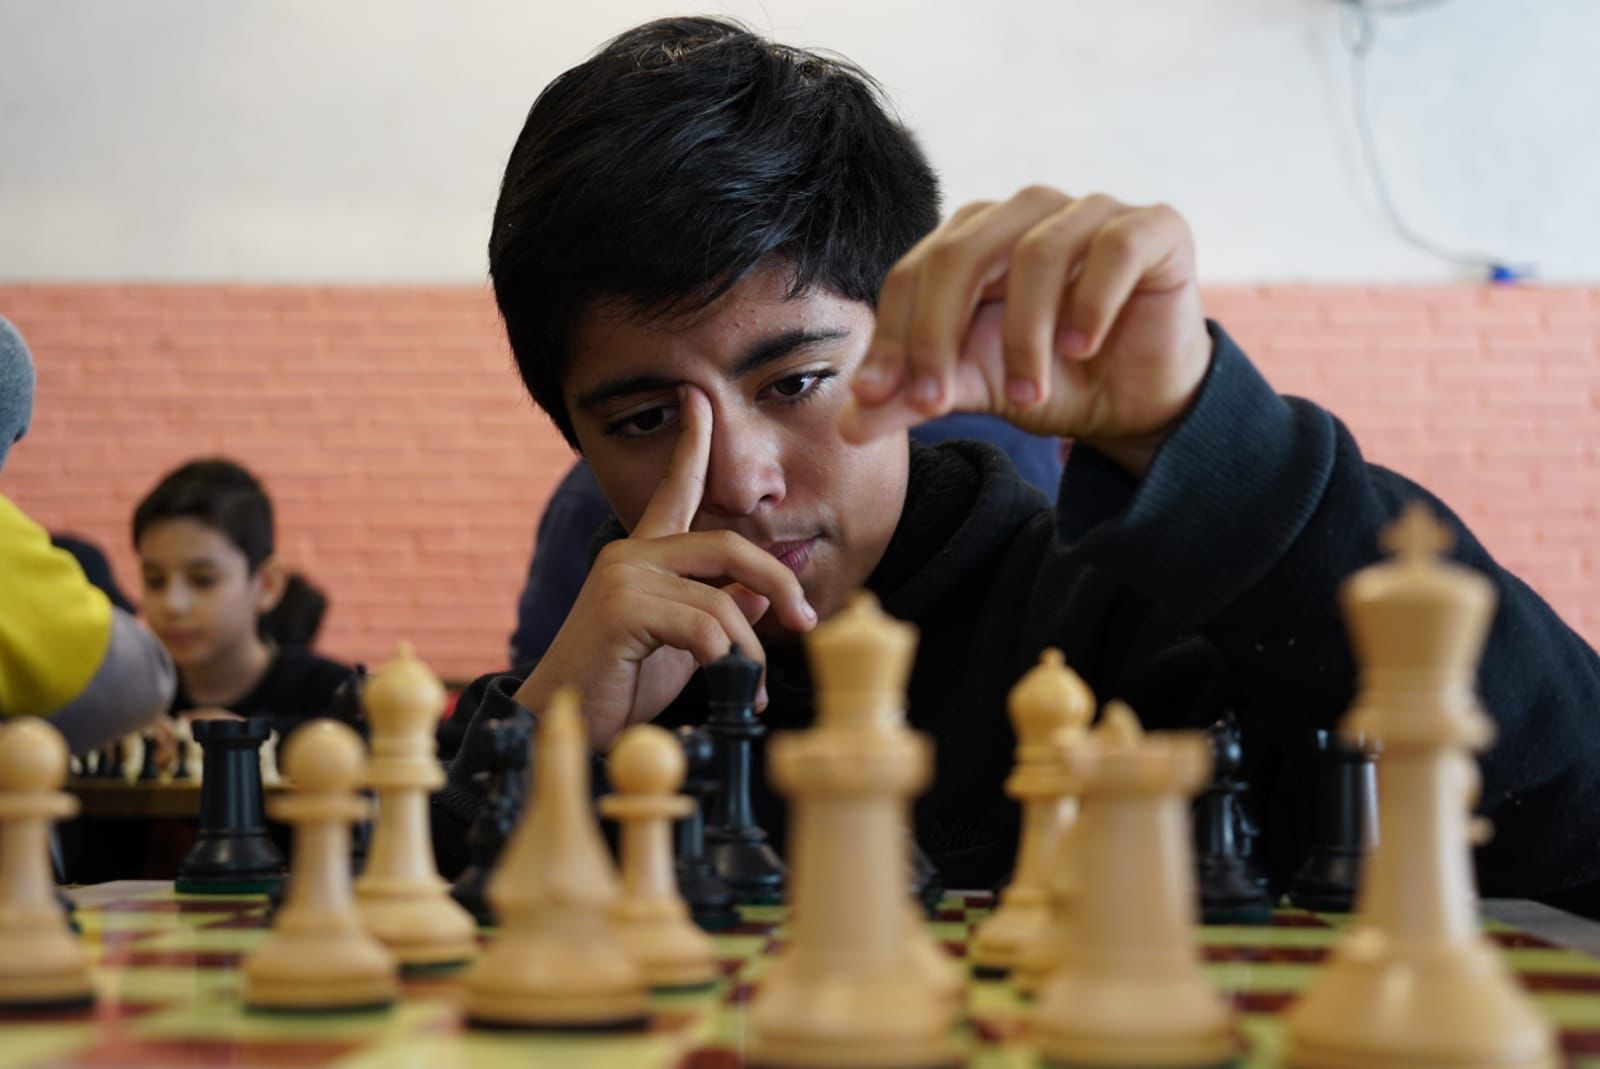 第三届市国际象棋联赛开放报名